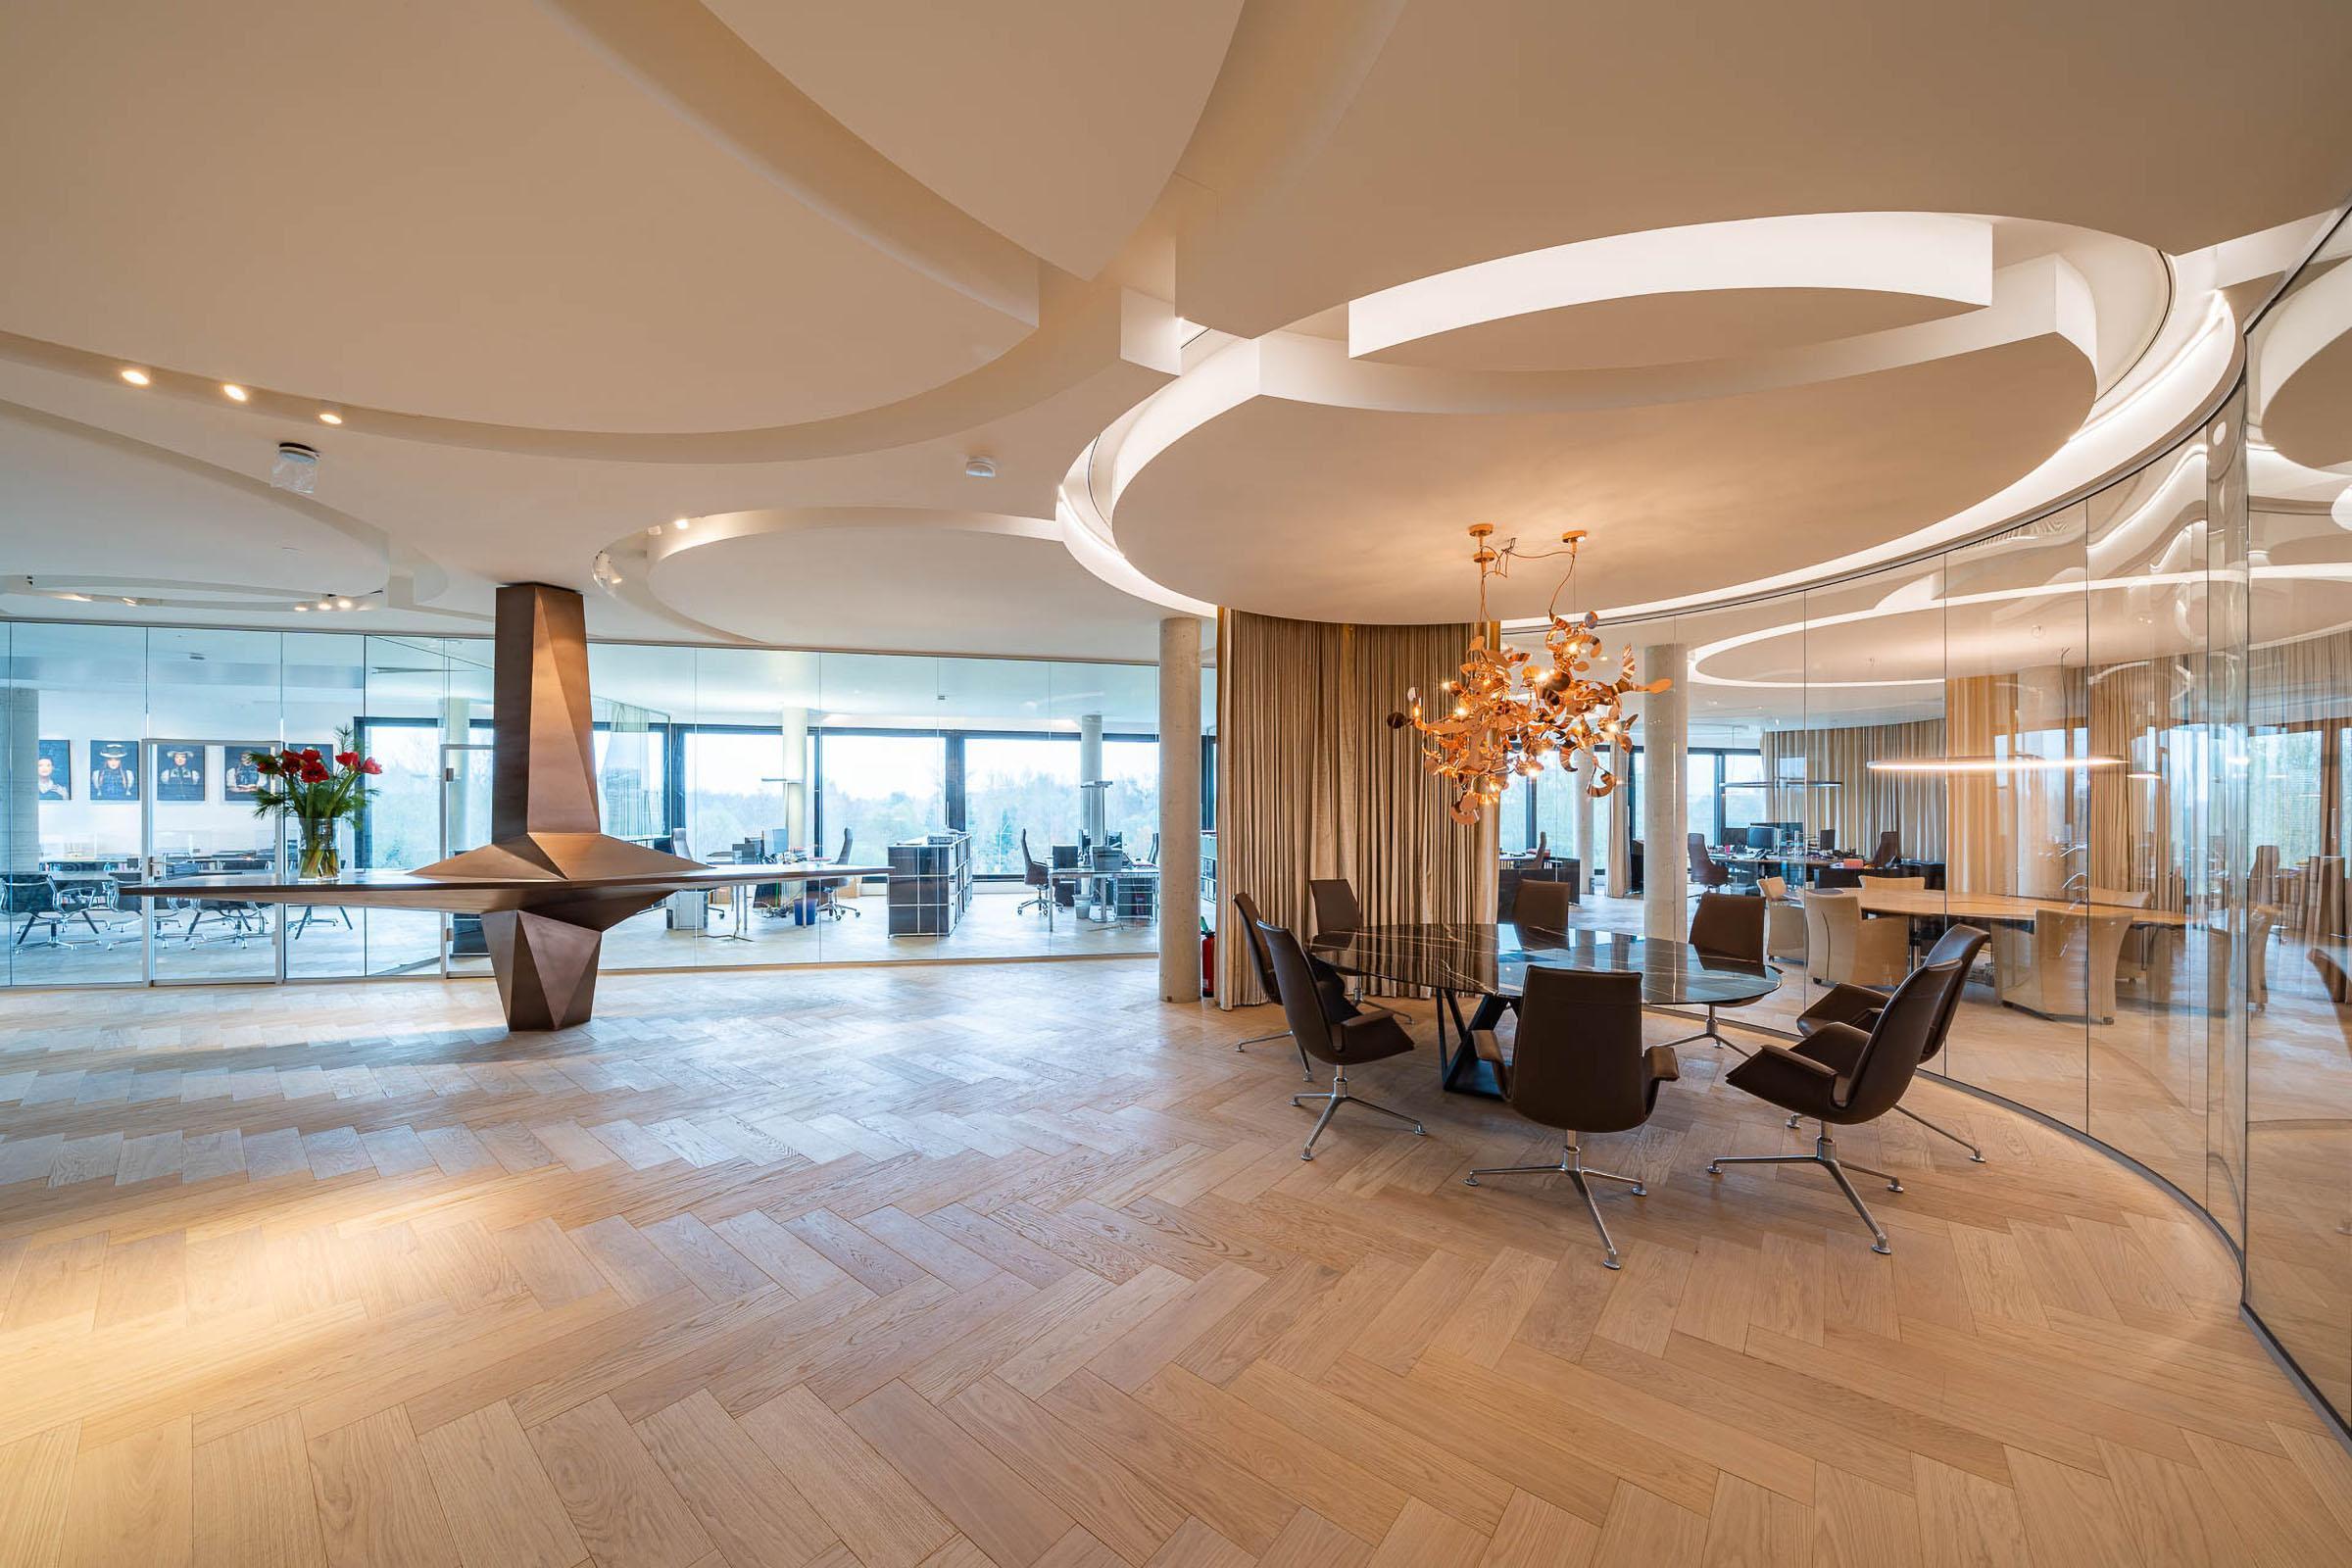 Willkommen in einem Eingangsbereich von unvergleichlichem Komfort und luxuriösem Flair - Einladendes Interior Design für anspruchsvolle Büroumgebungen - GROSSMANN INTERIORS